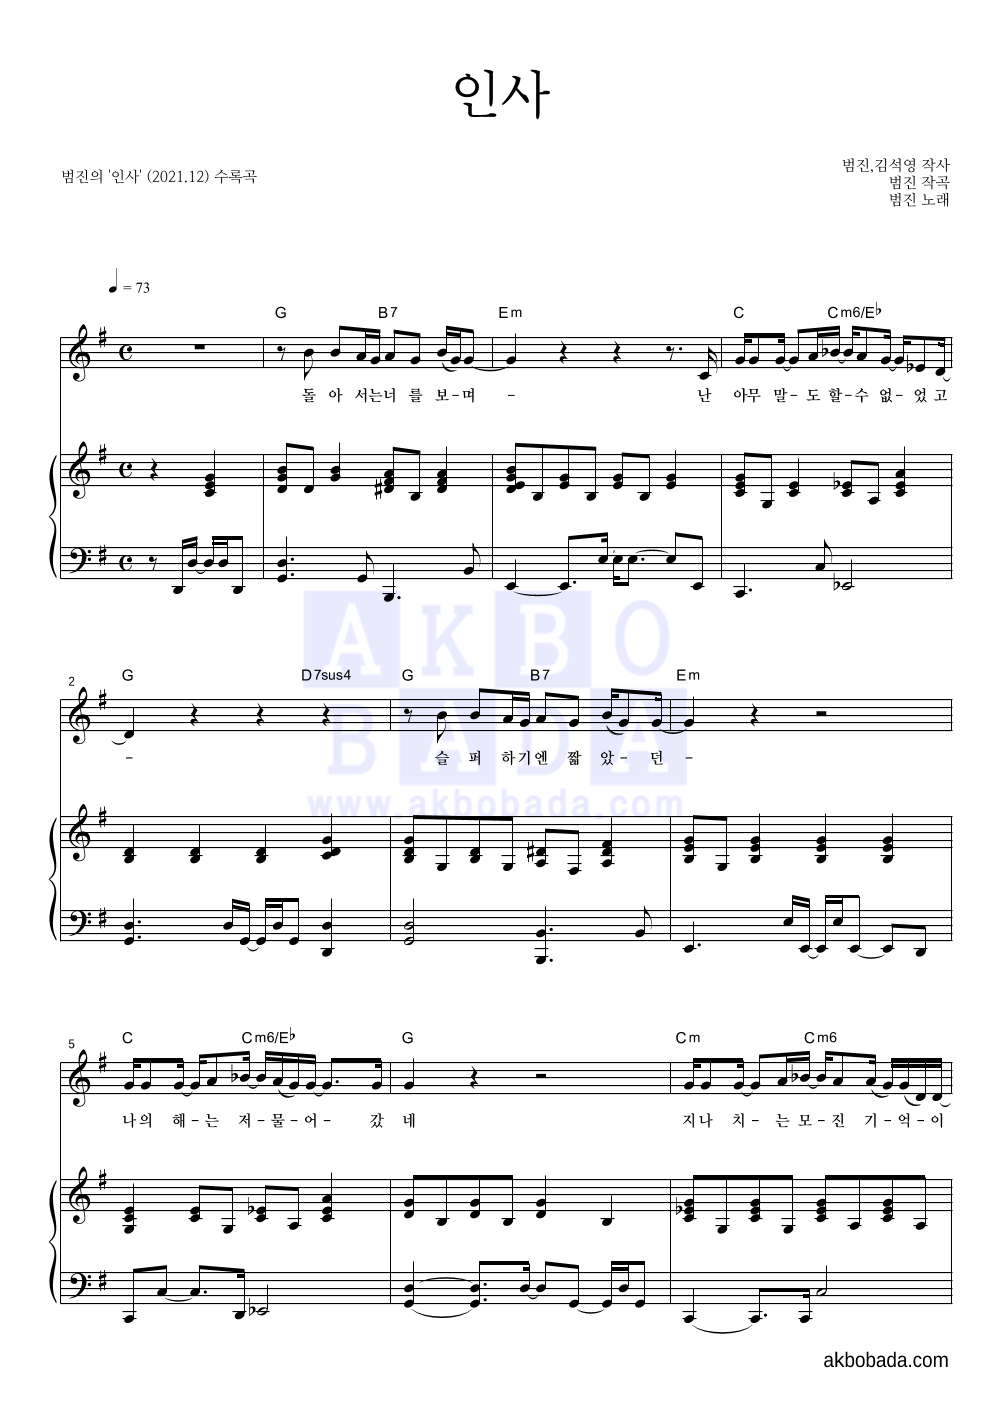 범진 - 인사 피아노 3단 악보 